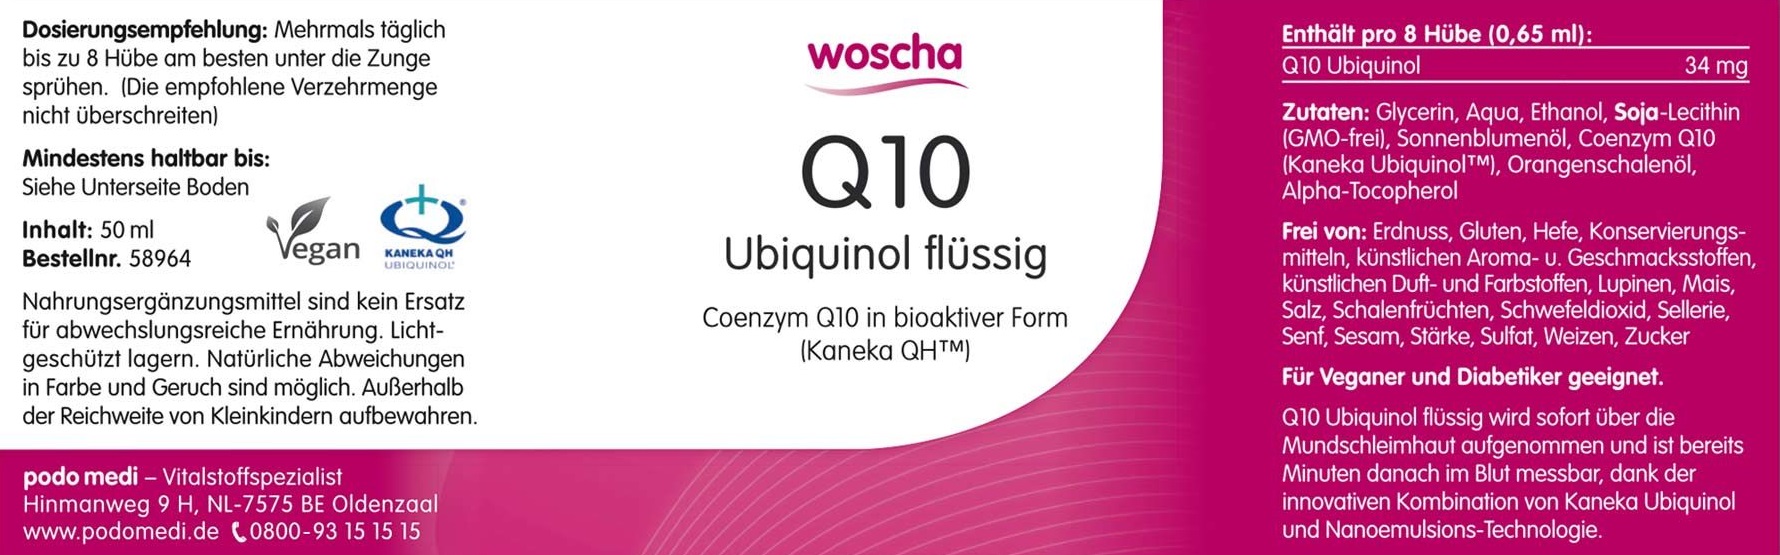 Woscha Q10 Ubiquinol flüssig von podo medi in 50 Milliliter Flasche Etikett